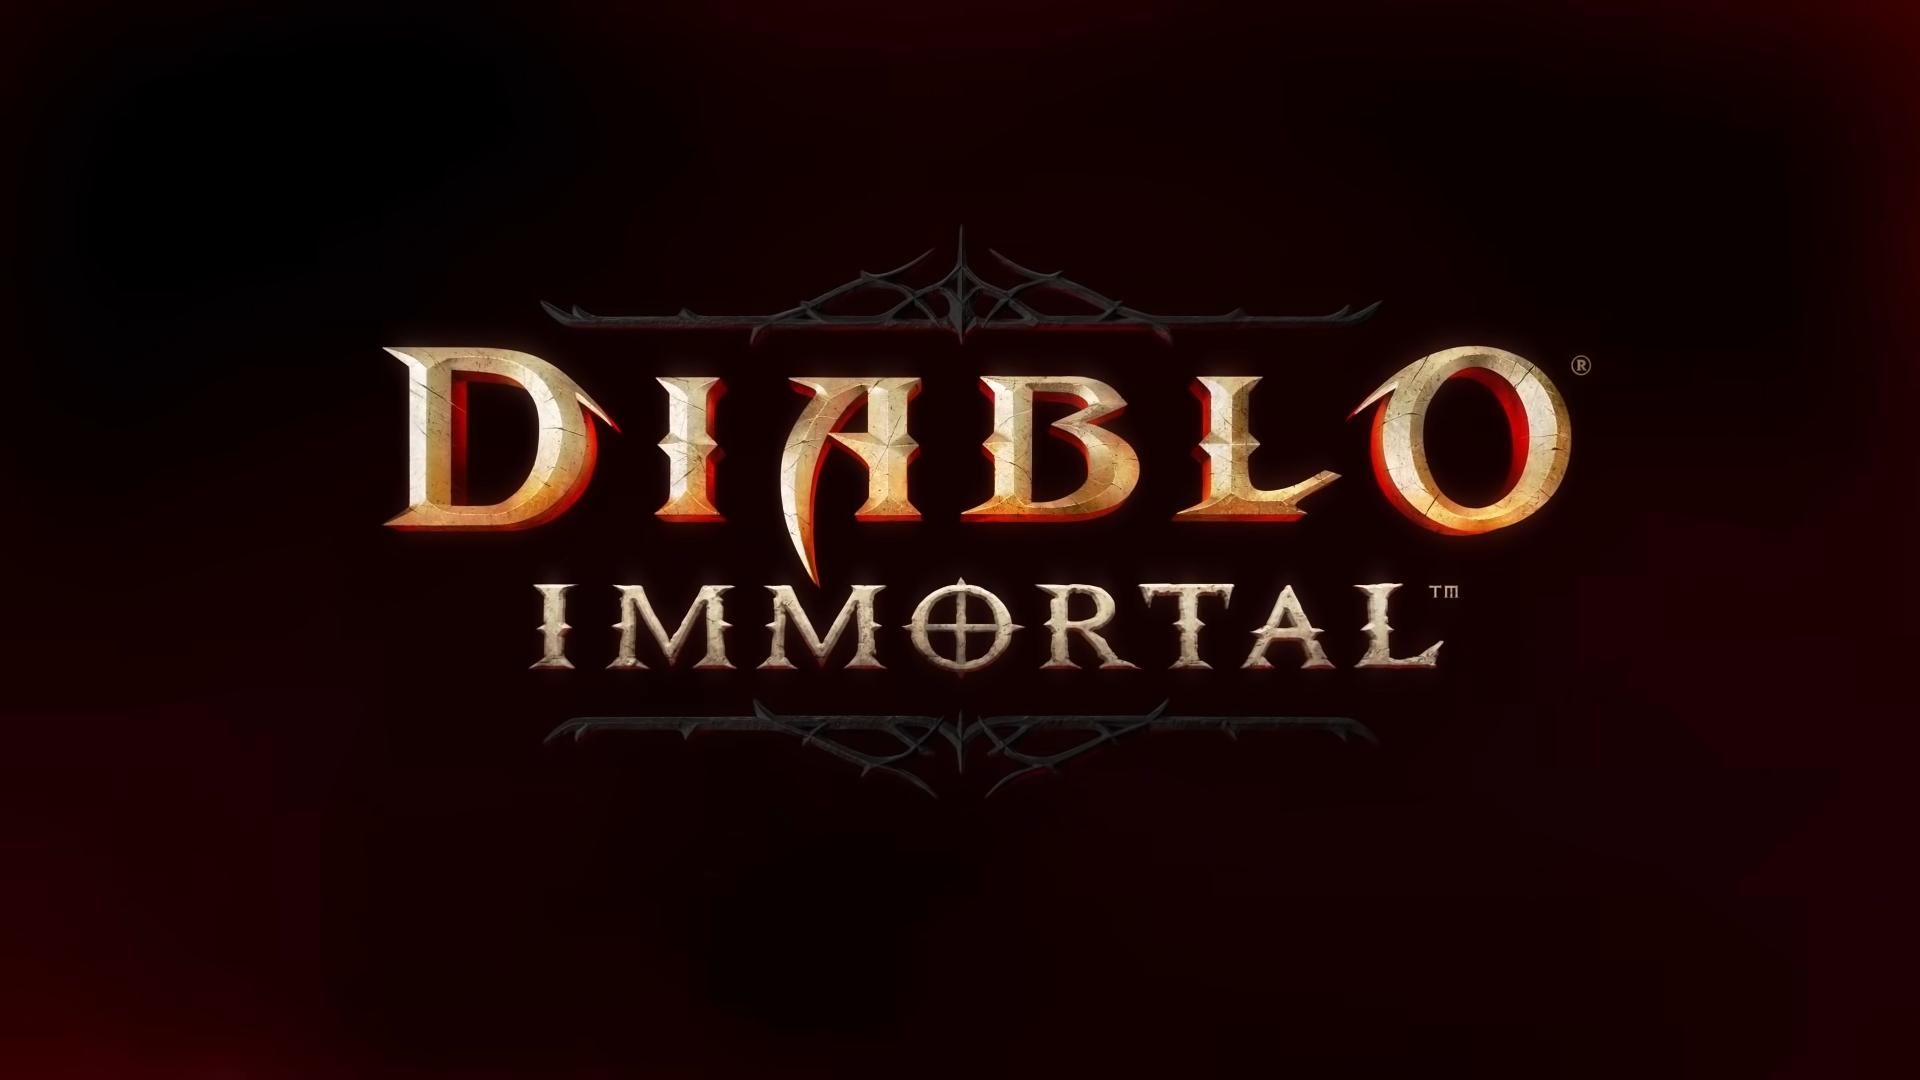 diabloe immortal release date